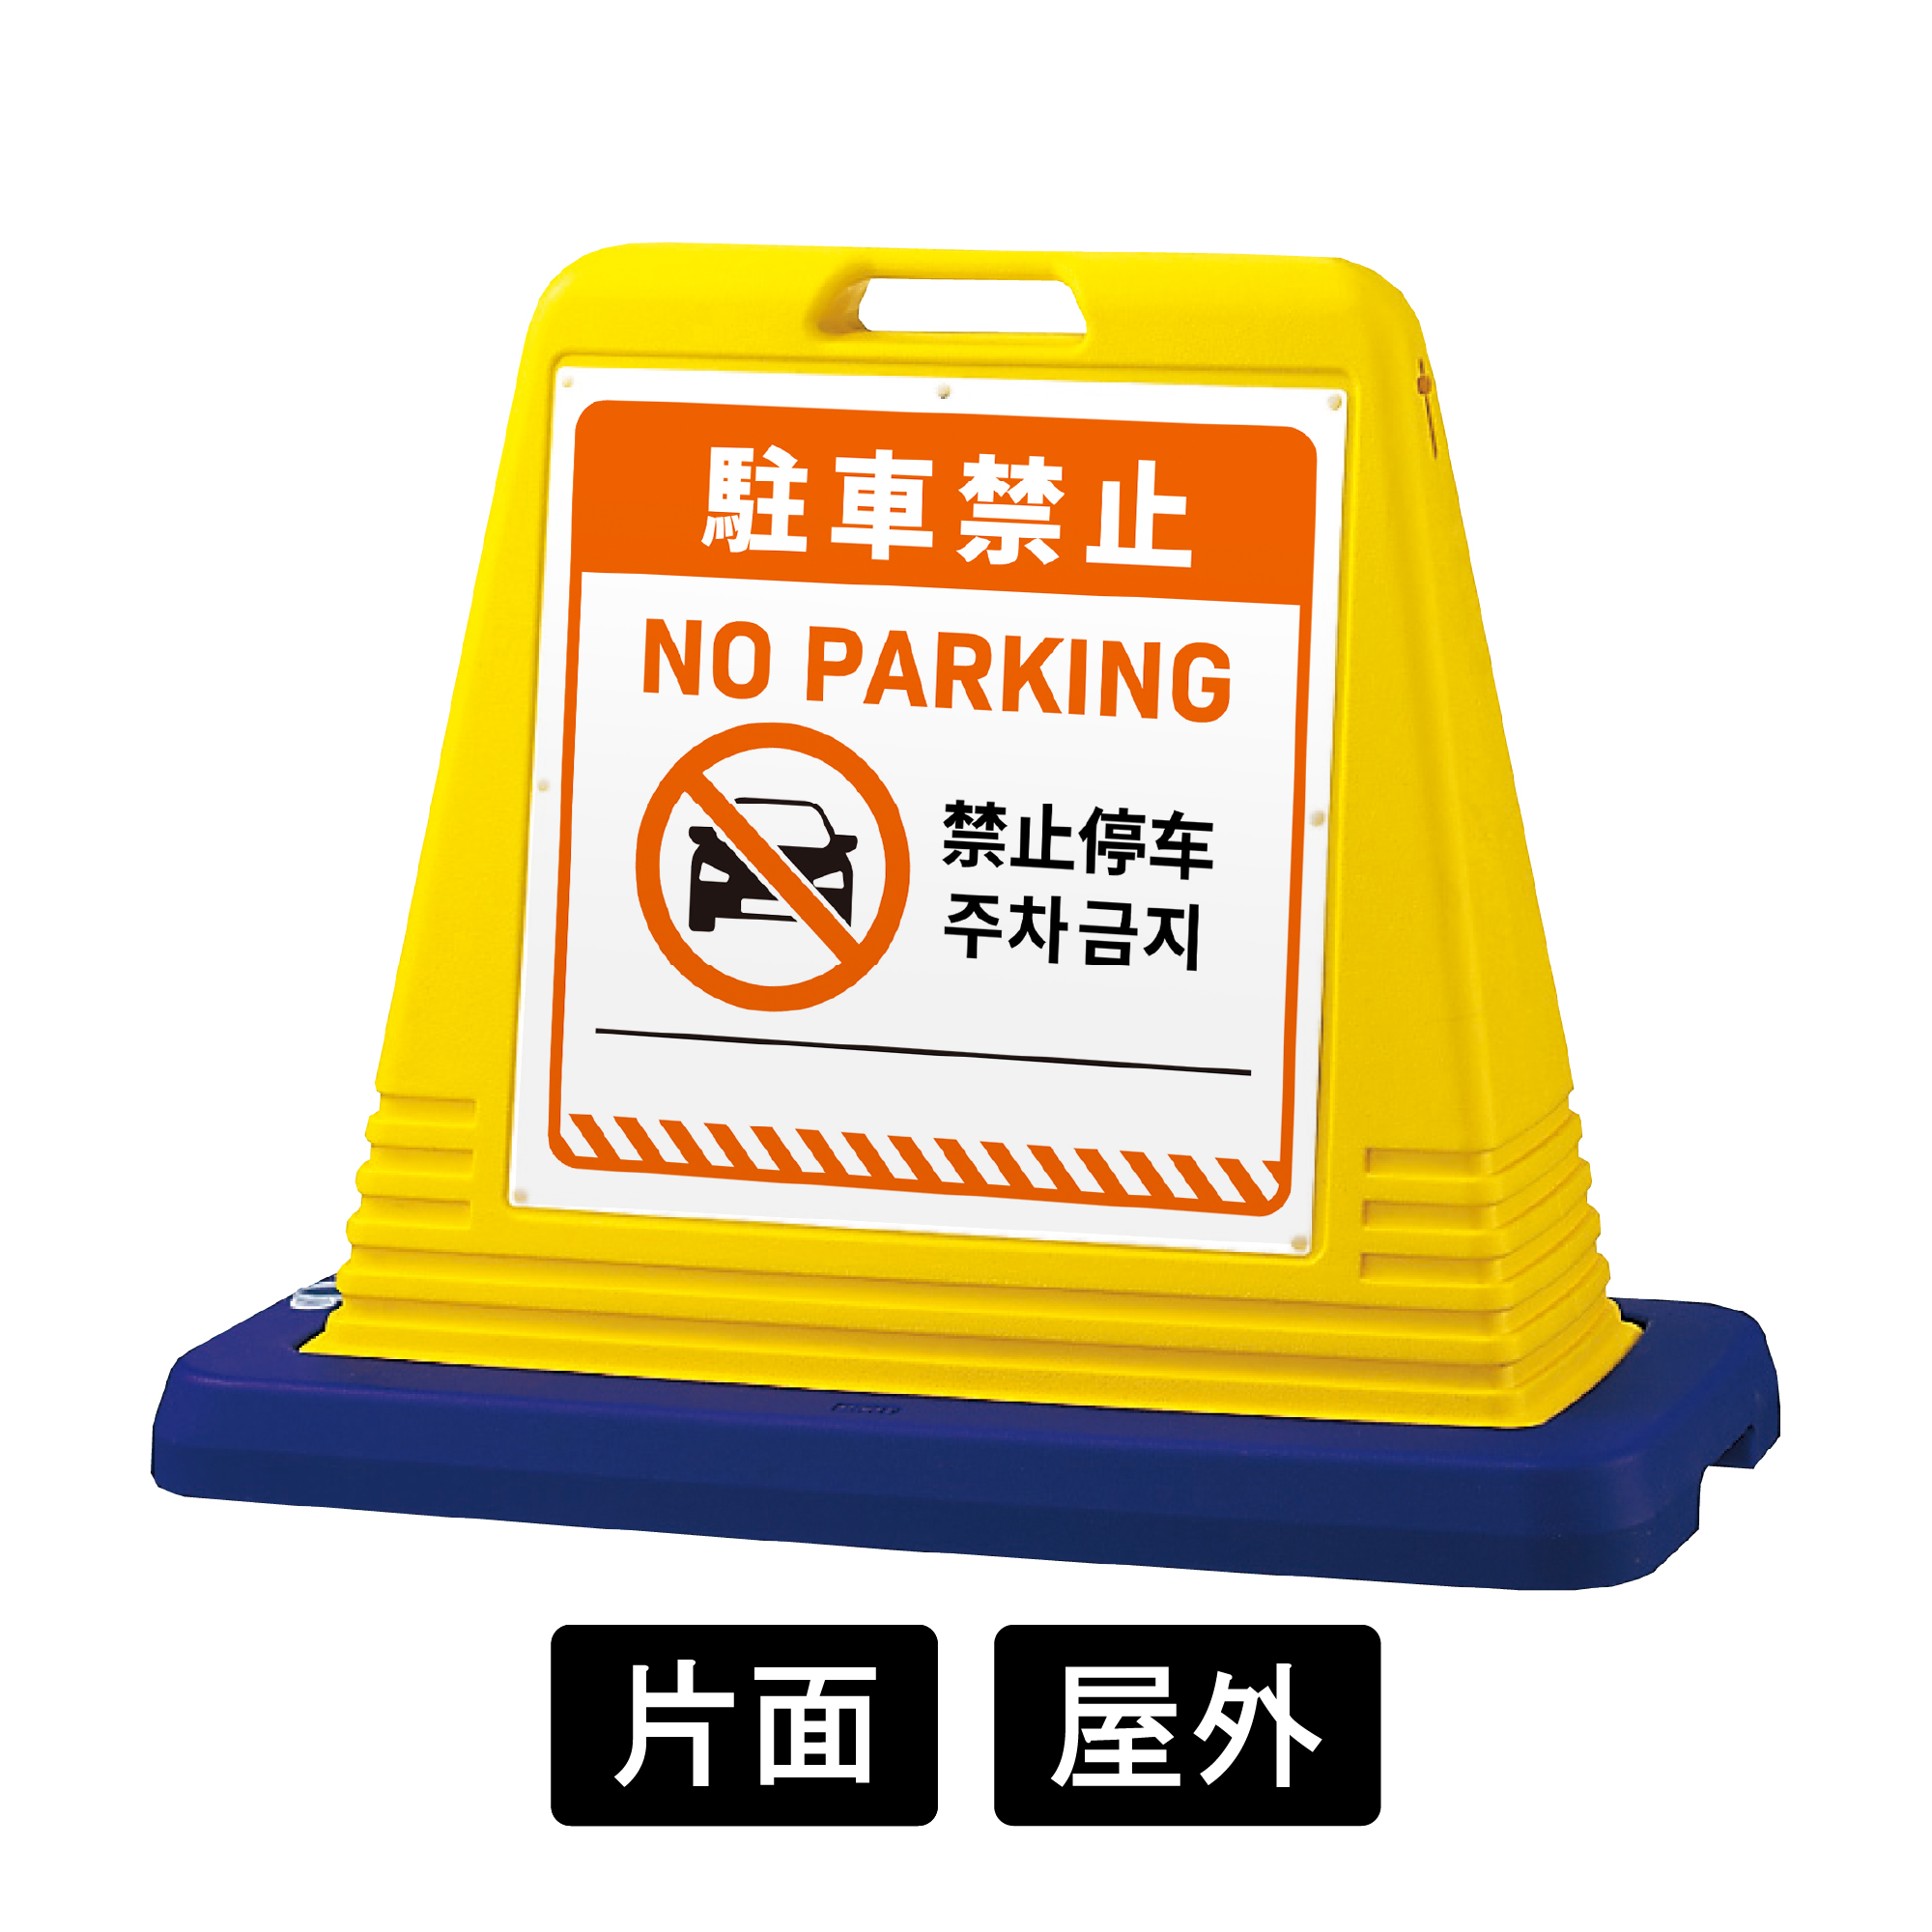 サインキューブ 「駐車禁止」 片面表示 イエロー SignWebオリジナル 多言語 ユニバーサルデザイン